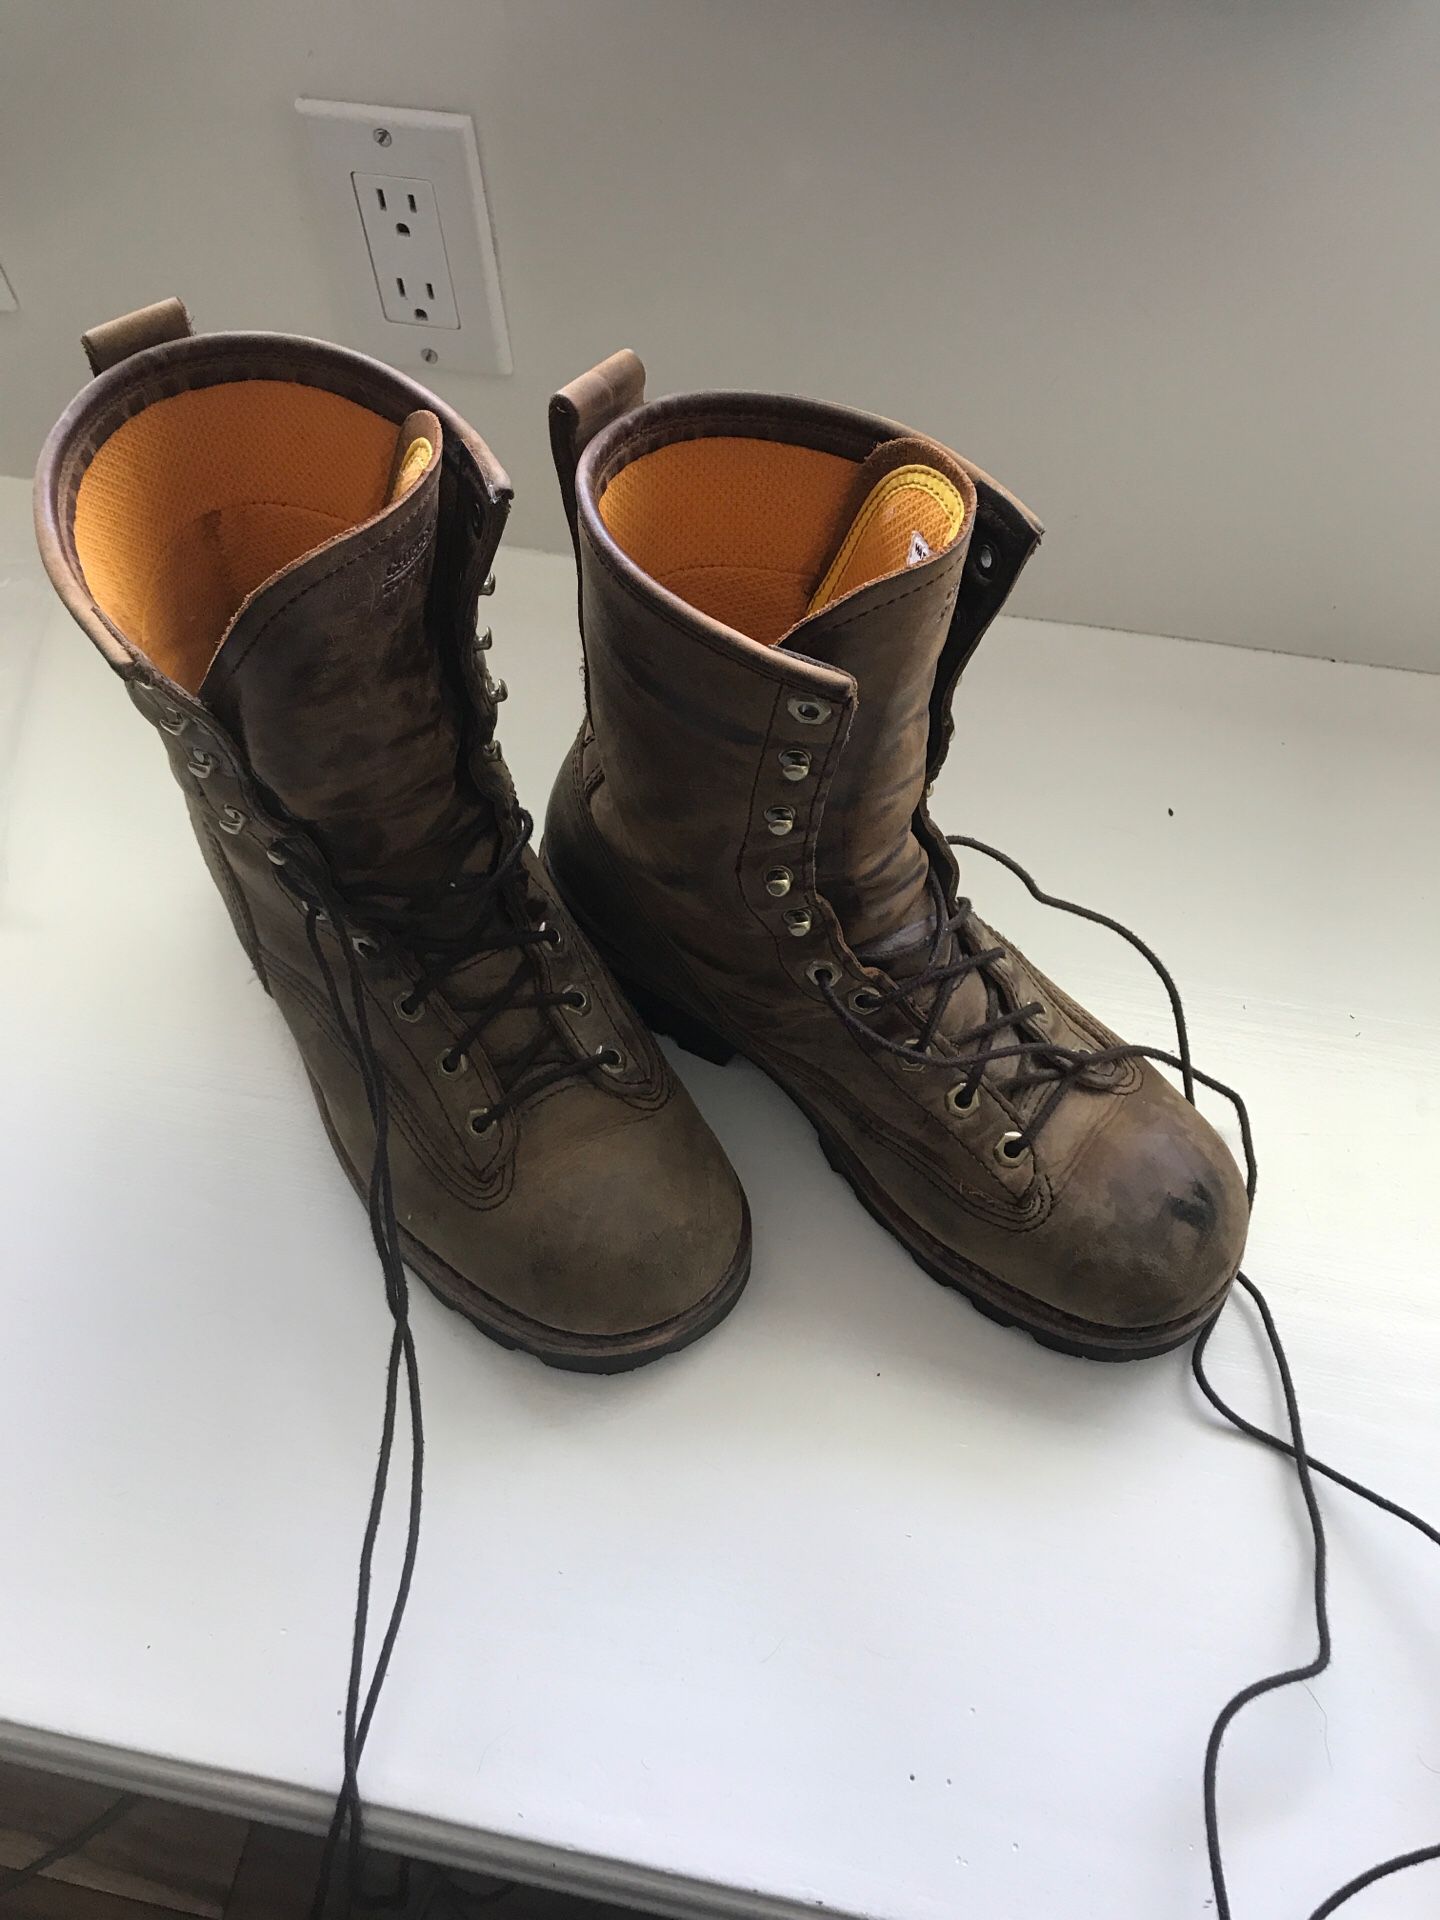 Logger boots Chippewa size 10